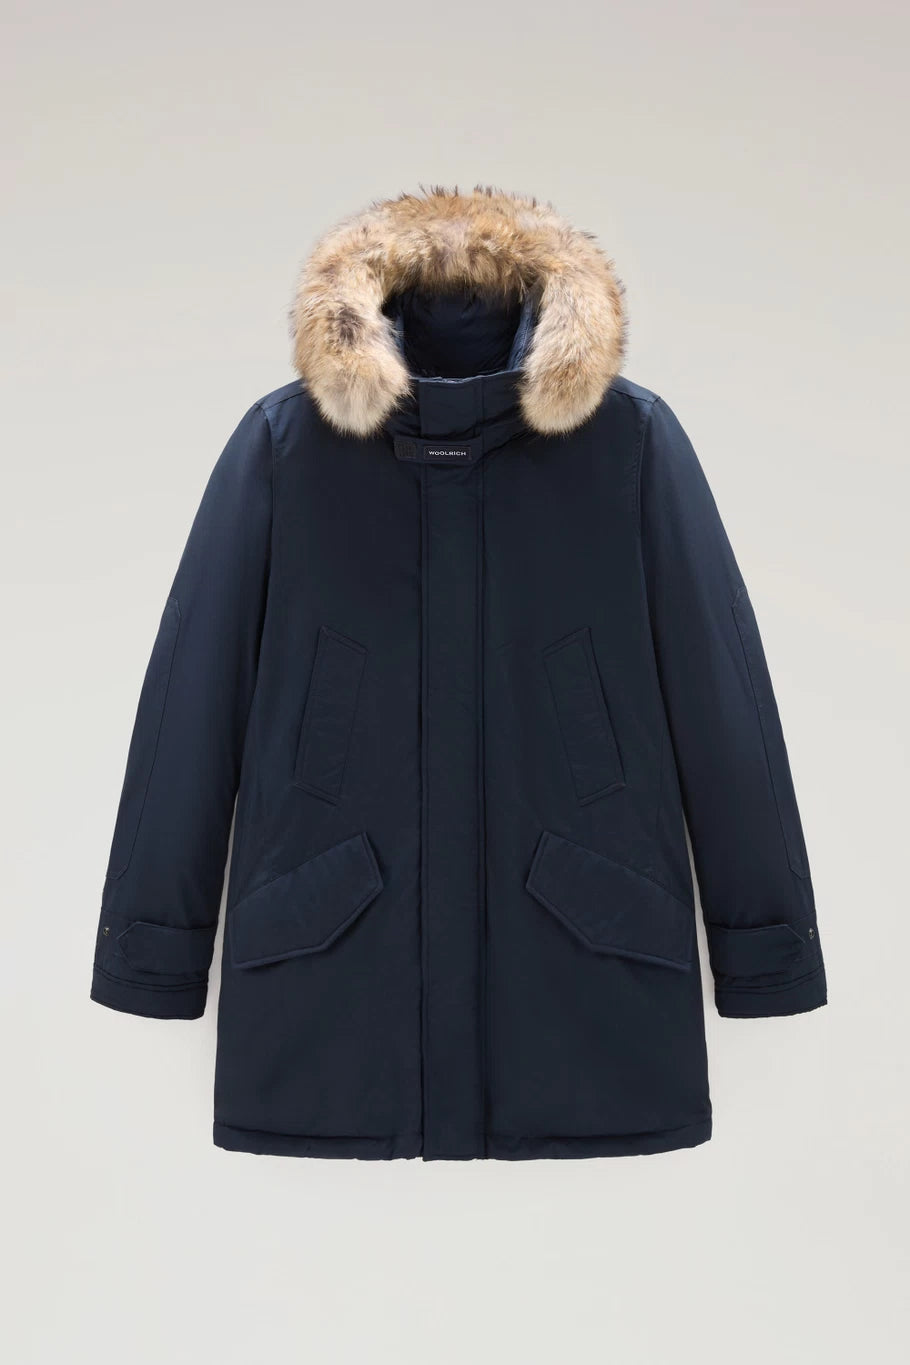 Woolrich High Collar Fur Parka - Melton Blue